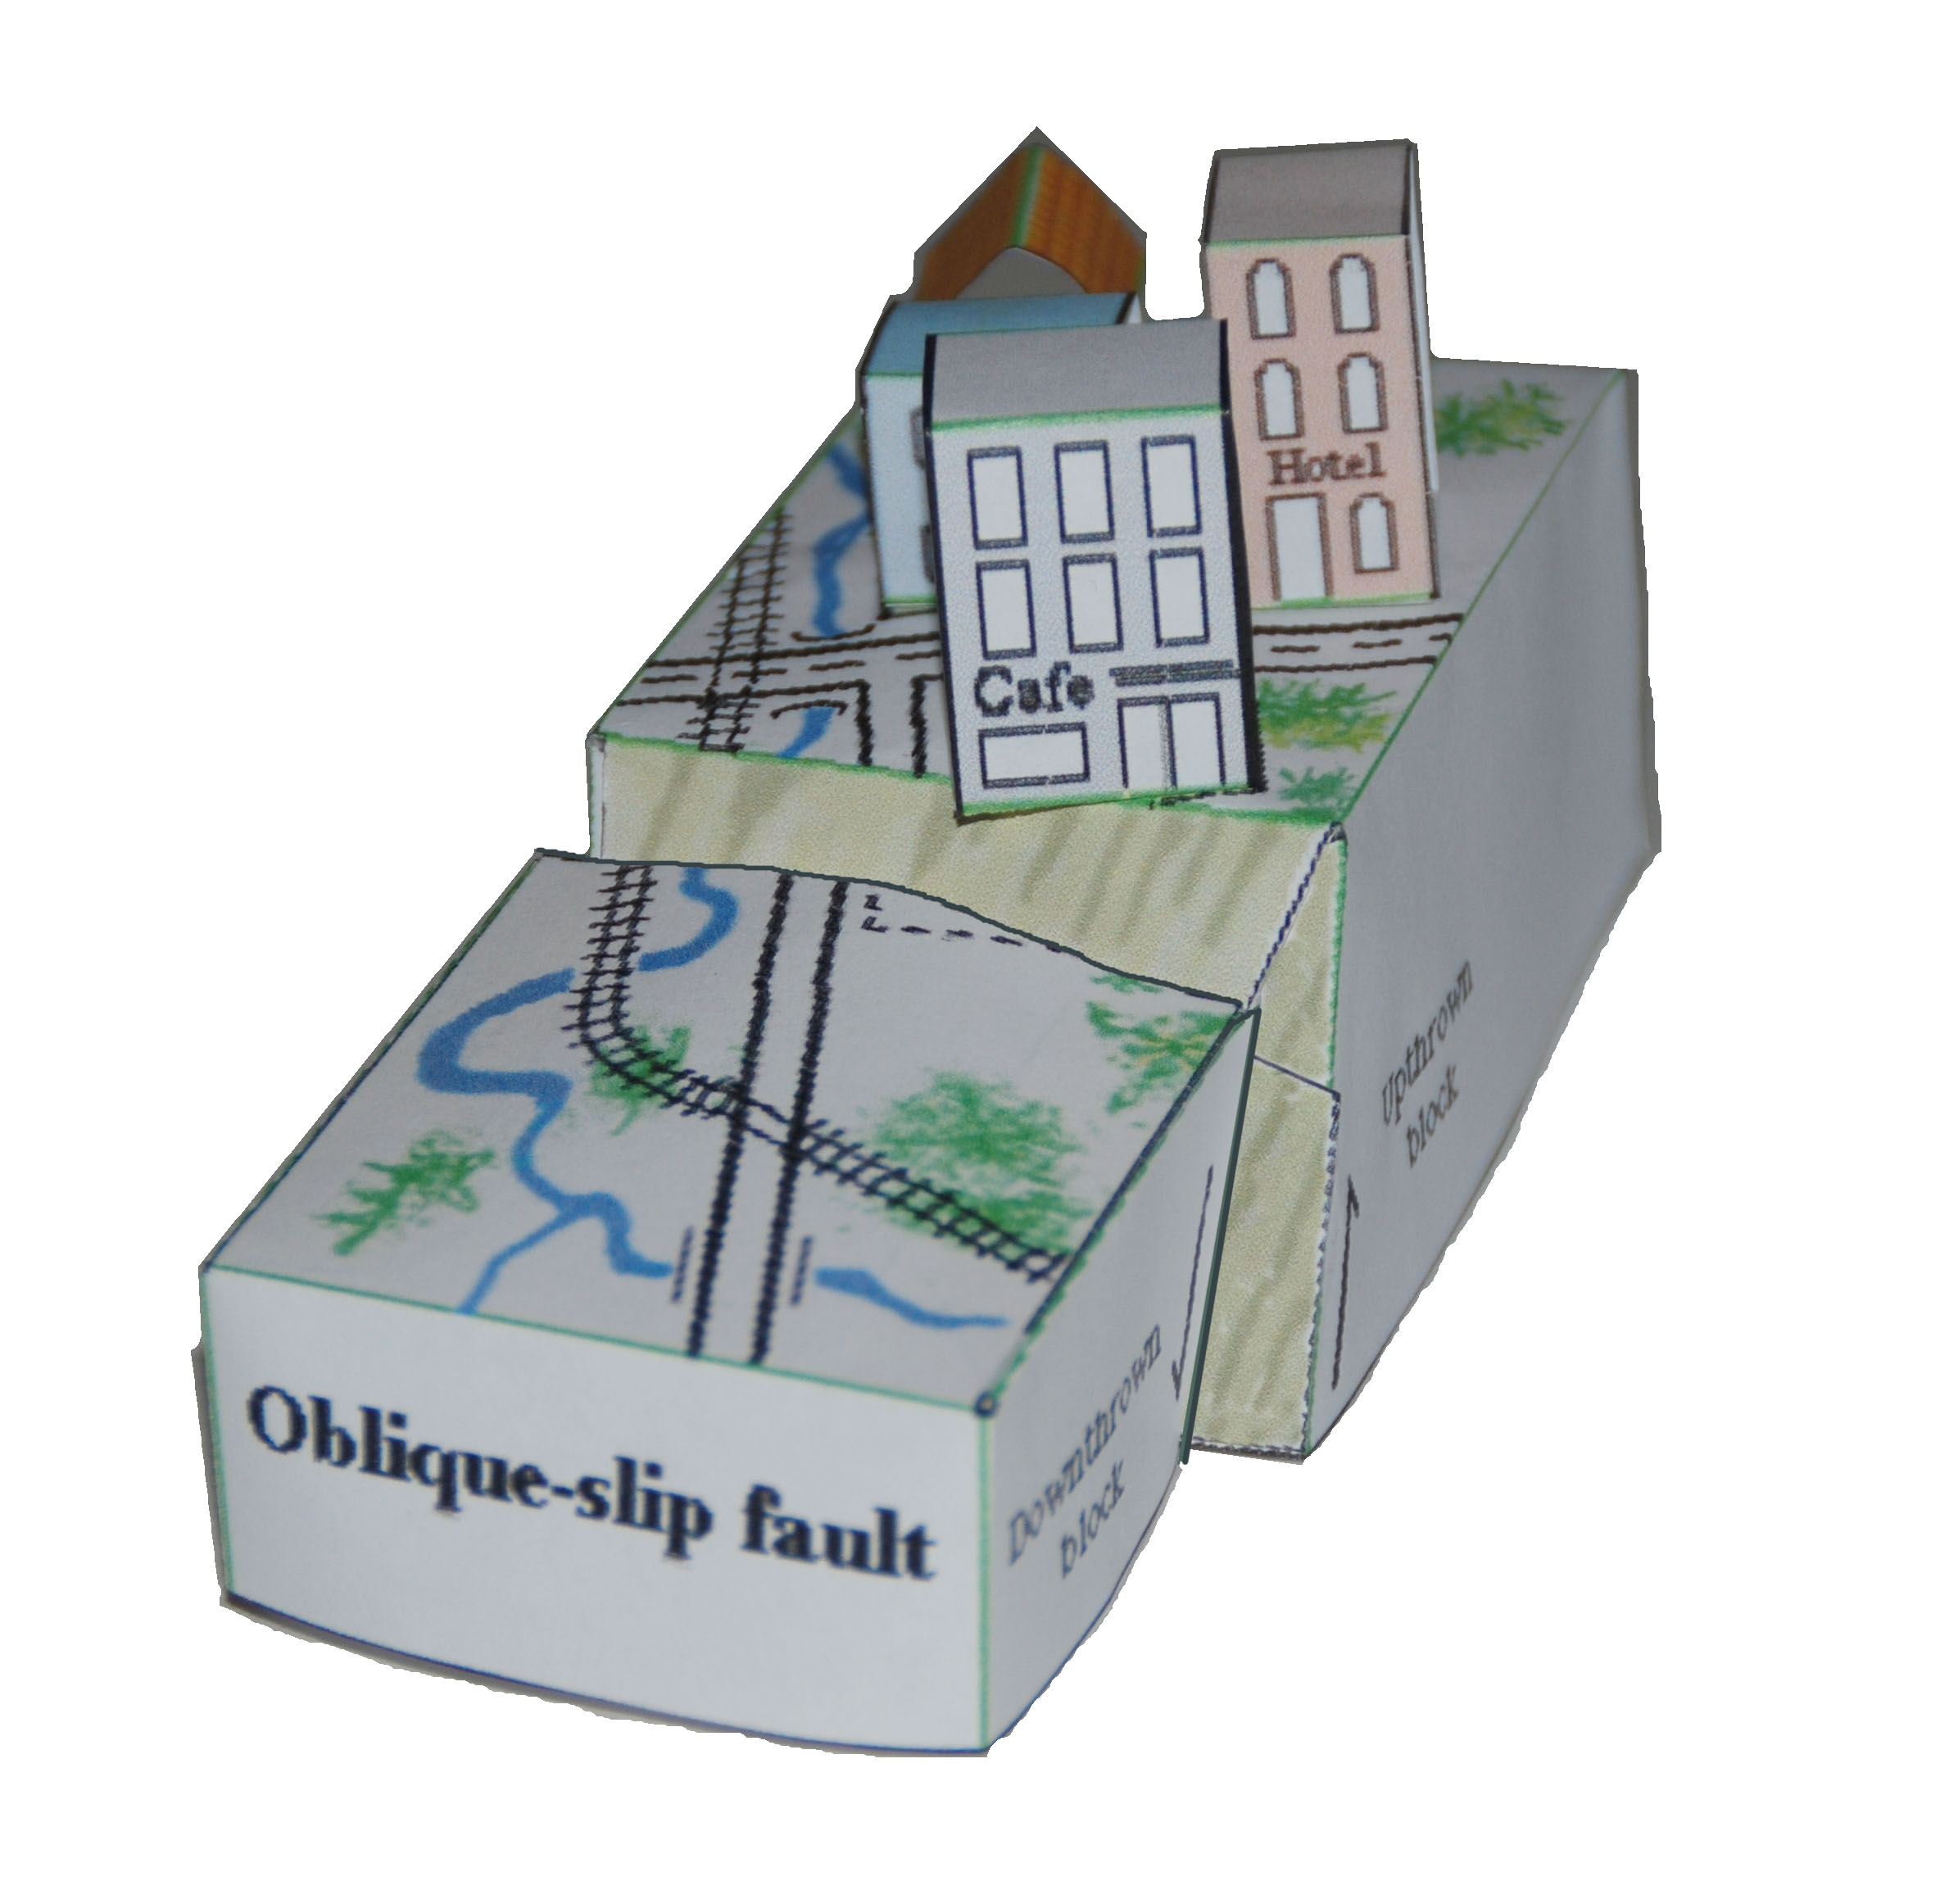 picture of oblique-slip fault model